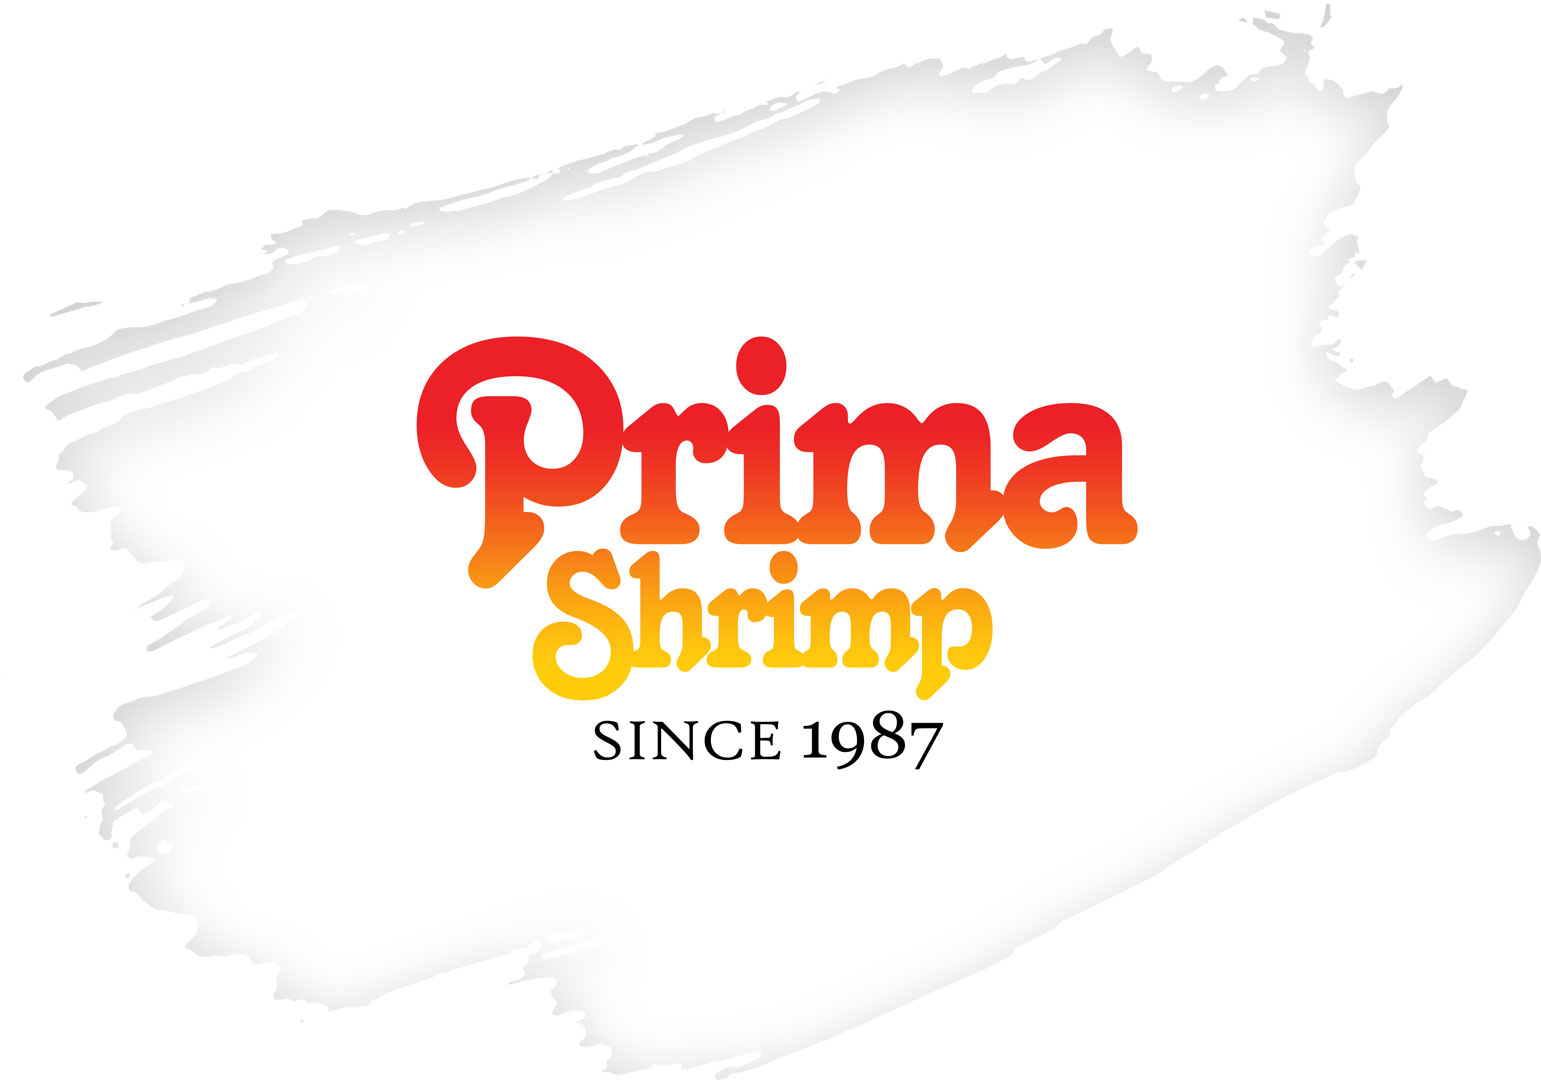 Prima Shrimp